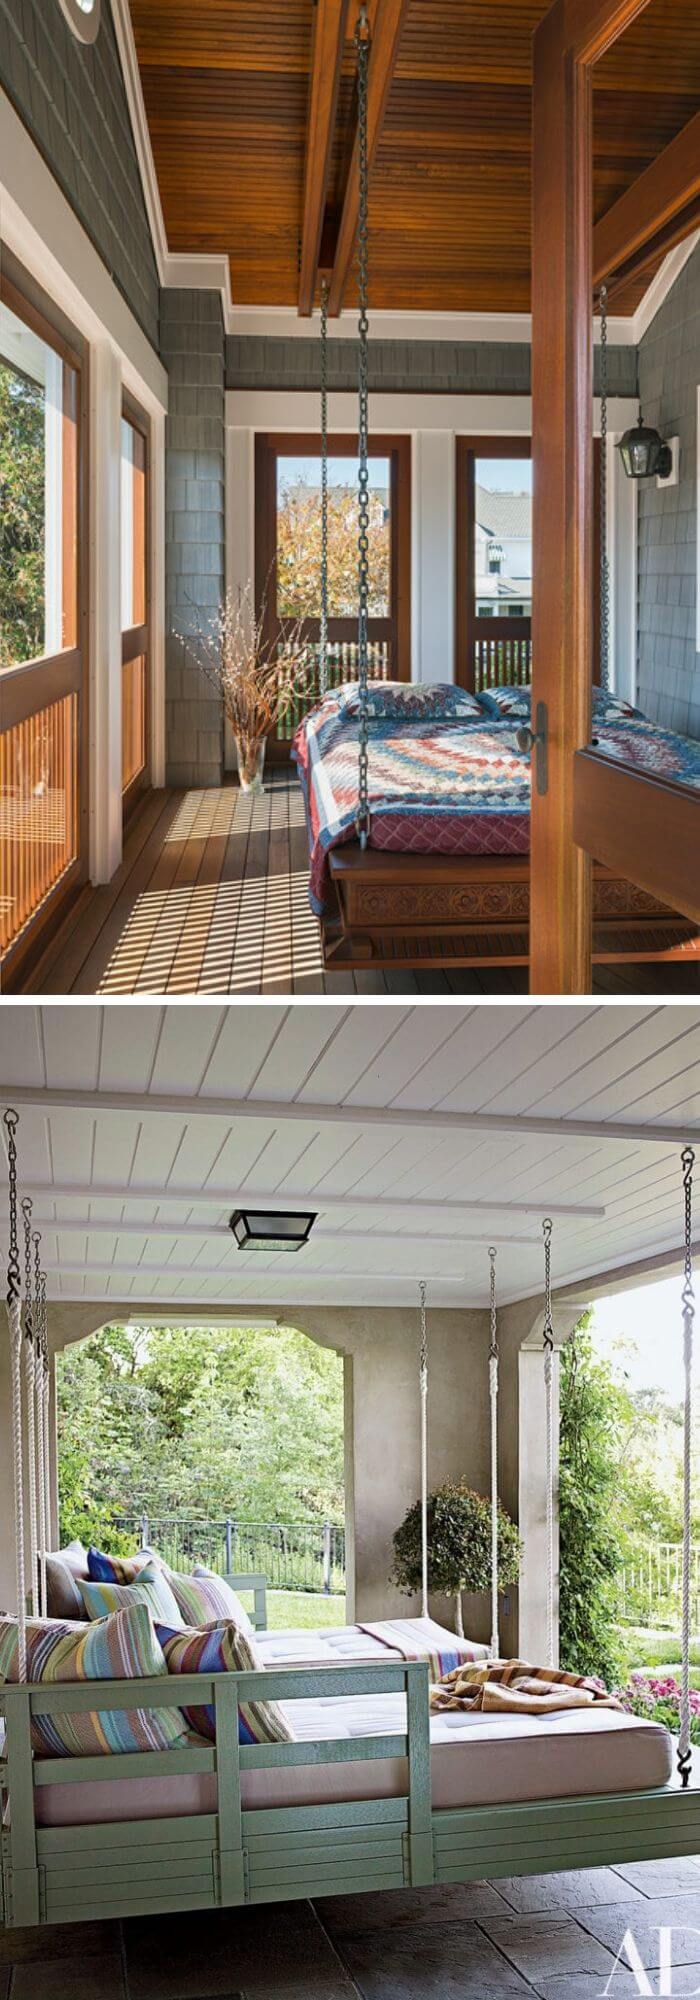 3 outdoor bedroom ideas